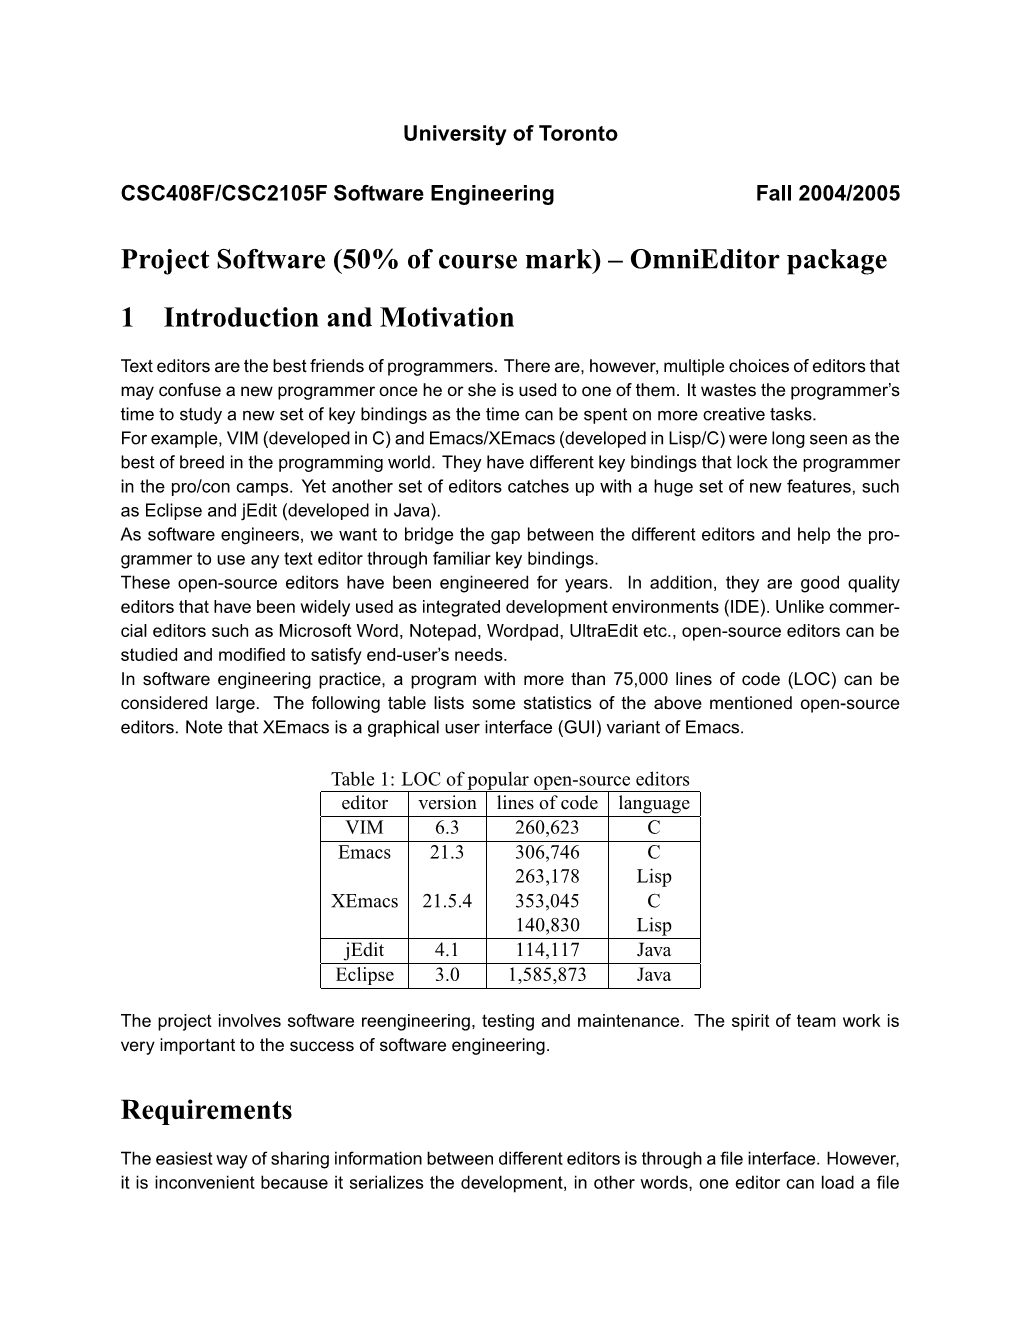 Software System Description